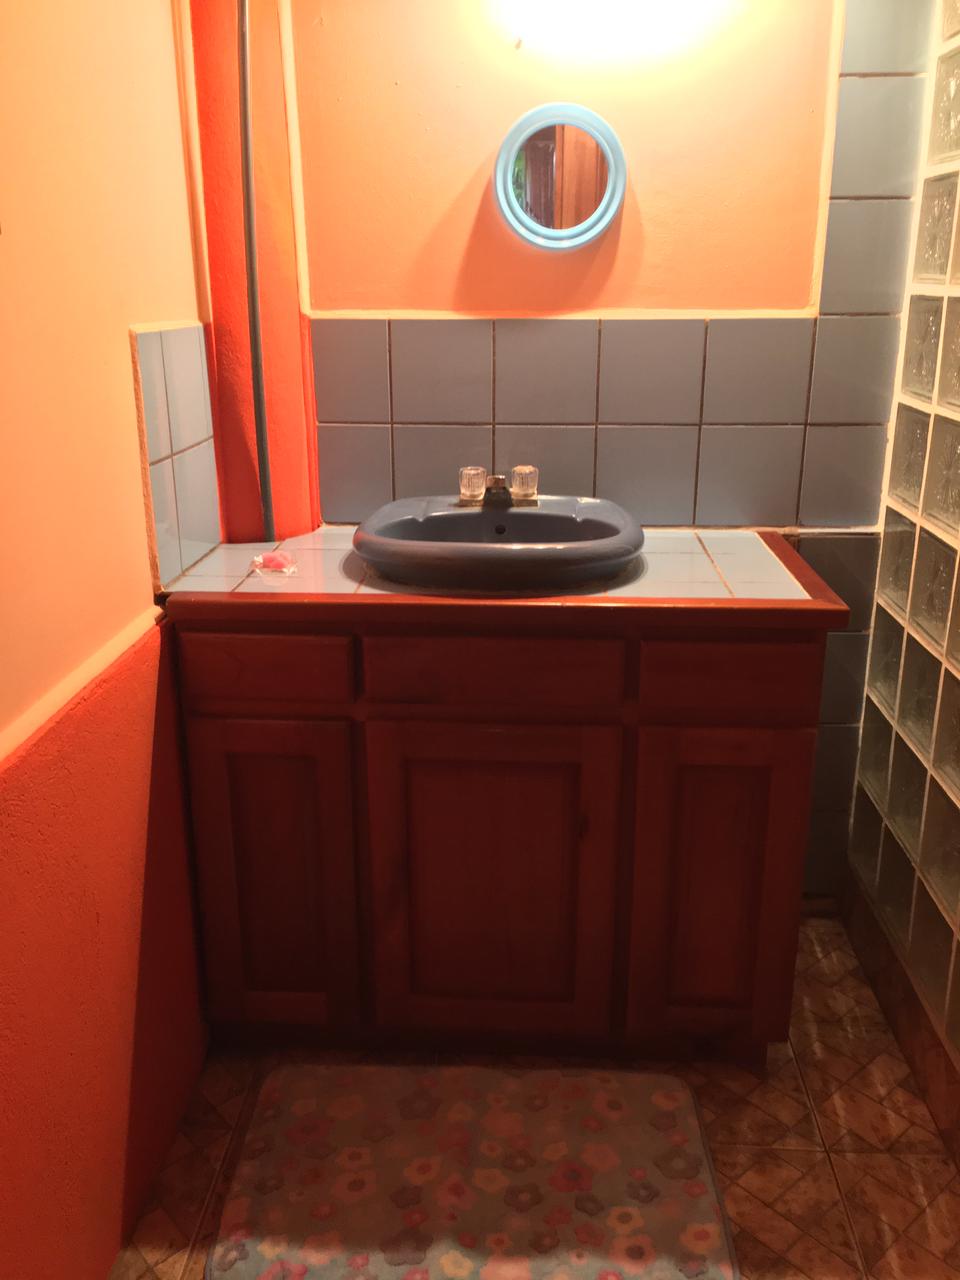 Olas-bravas-zancudo-bathroom-vanity